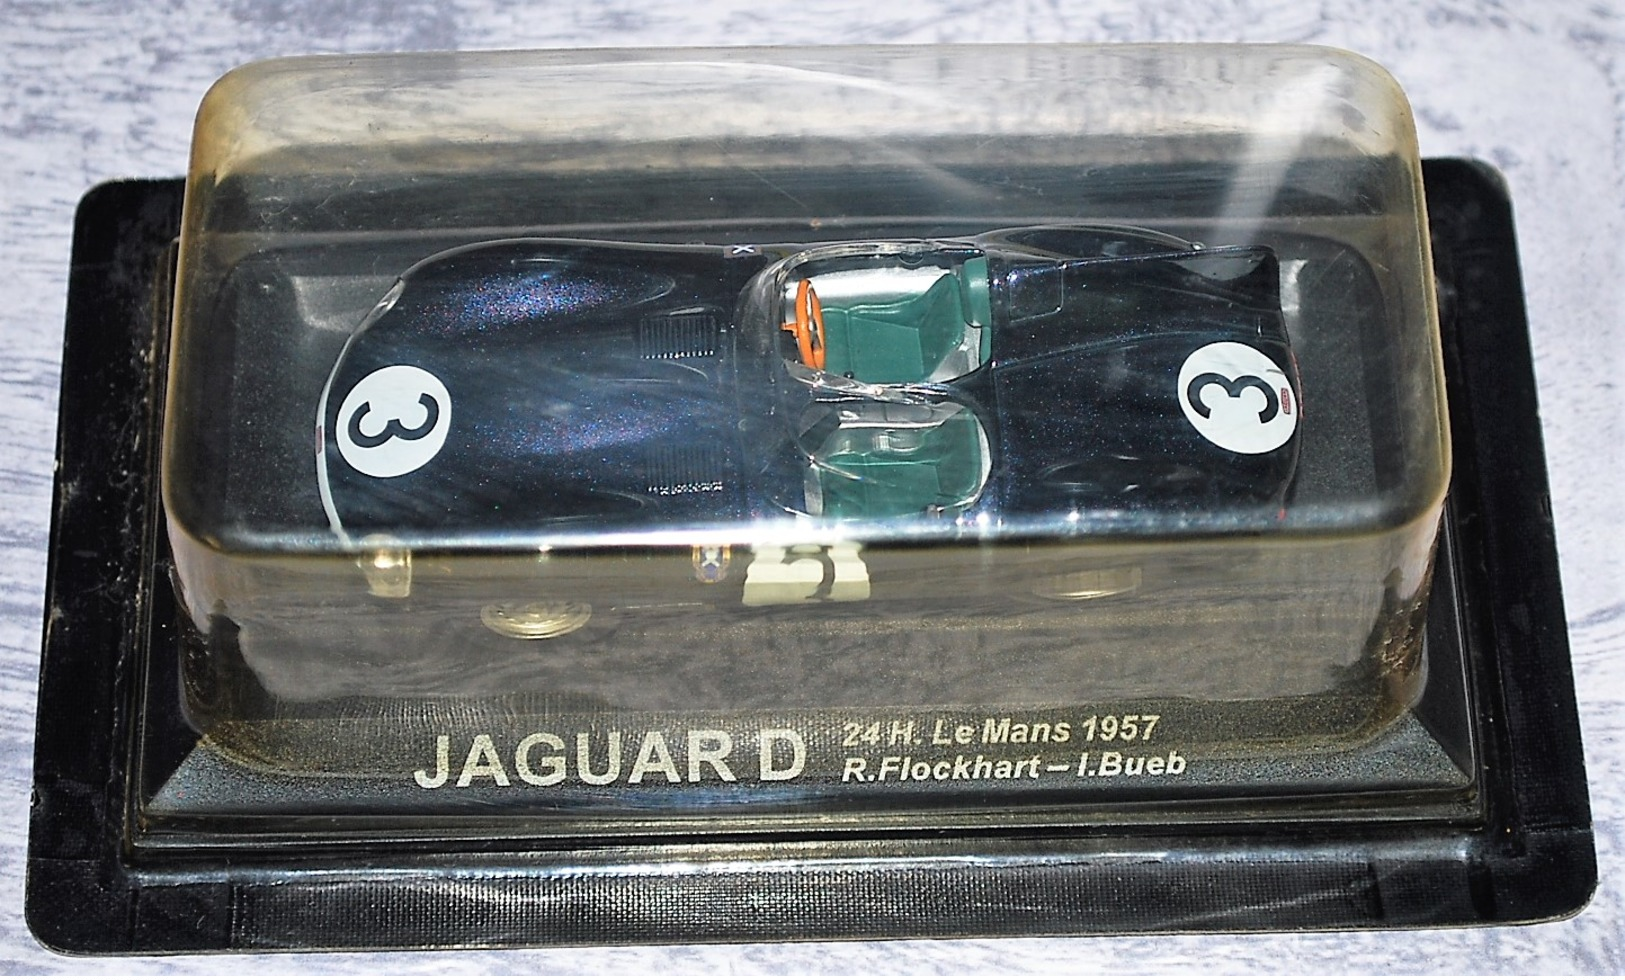 JAGUAR D - 24H Le MANS - 1957 - Rallye